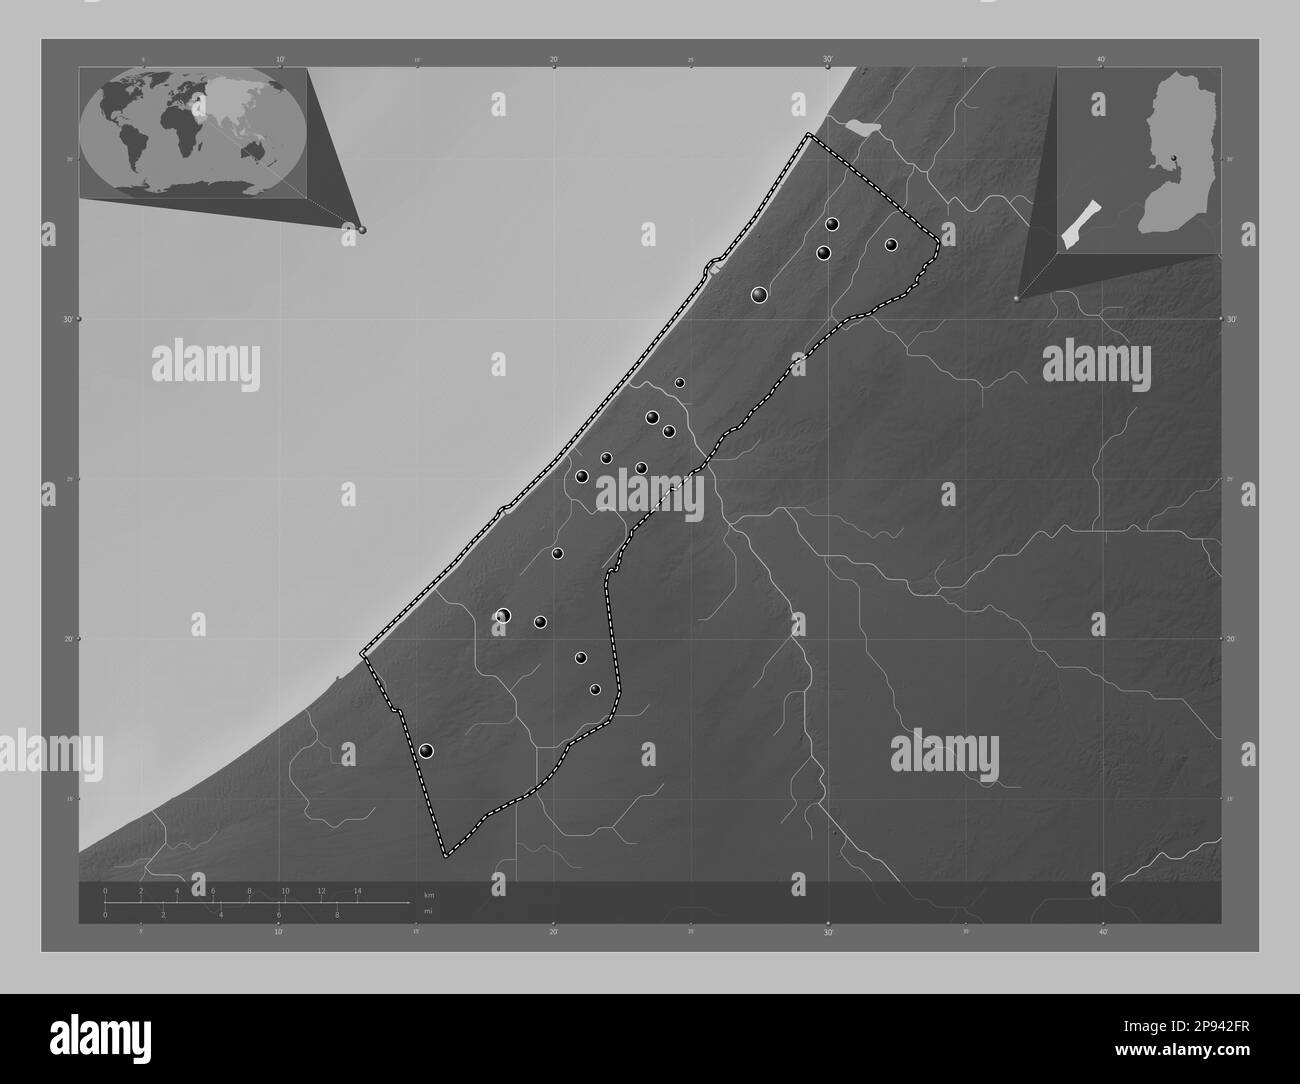 Striscia di Gaza, regione della Palestina. Mappa in scala di grigi con laghi e fiumi. Posizioni delle principali città della regione. Mappa della posizione ausiliaria ad angolo Foto Stock